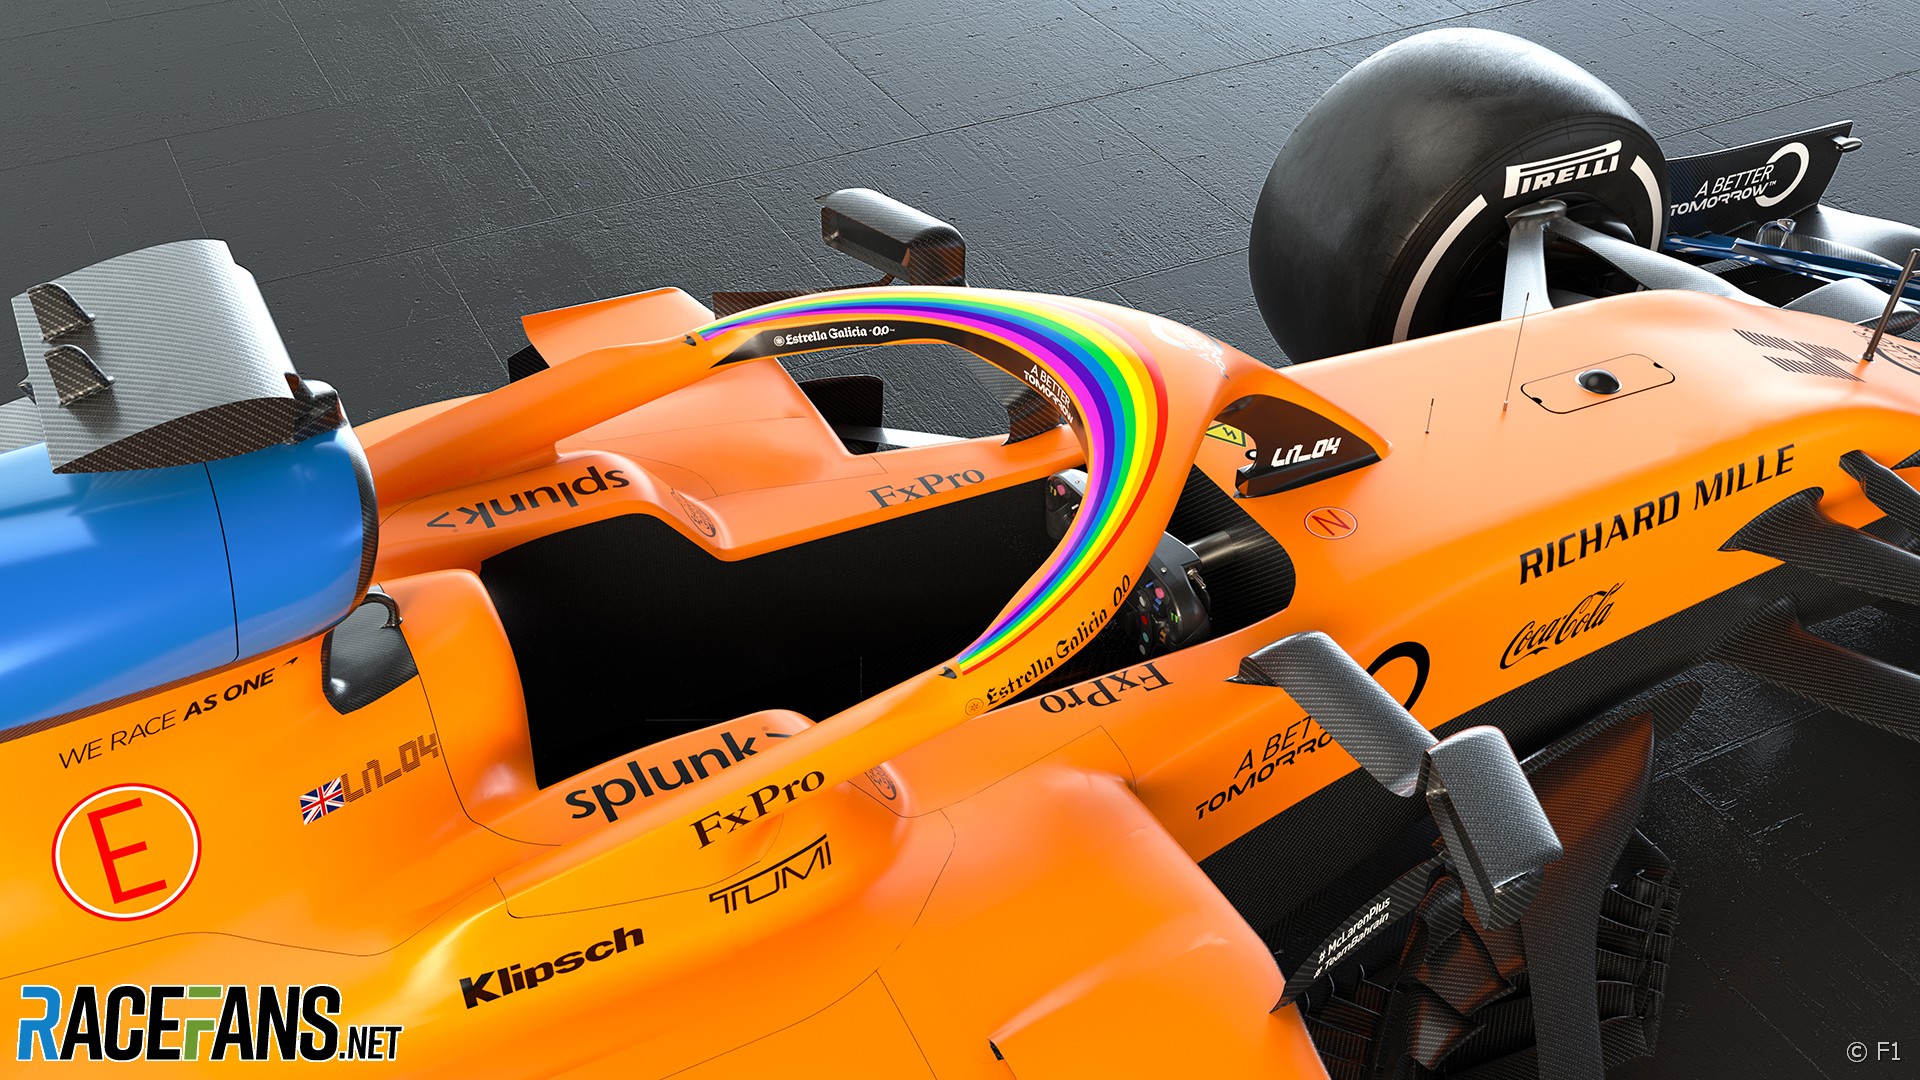 McLaren with #WeRaceAsOne branding